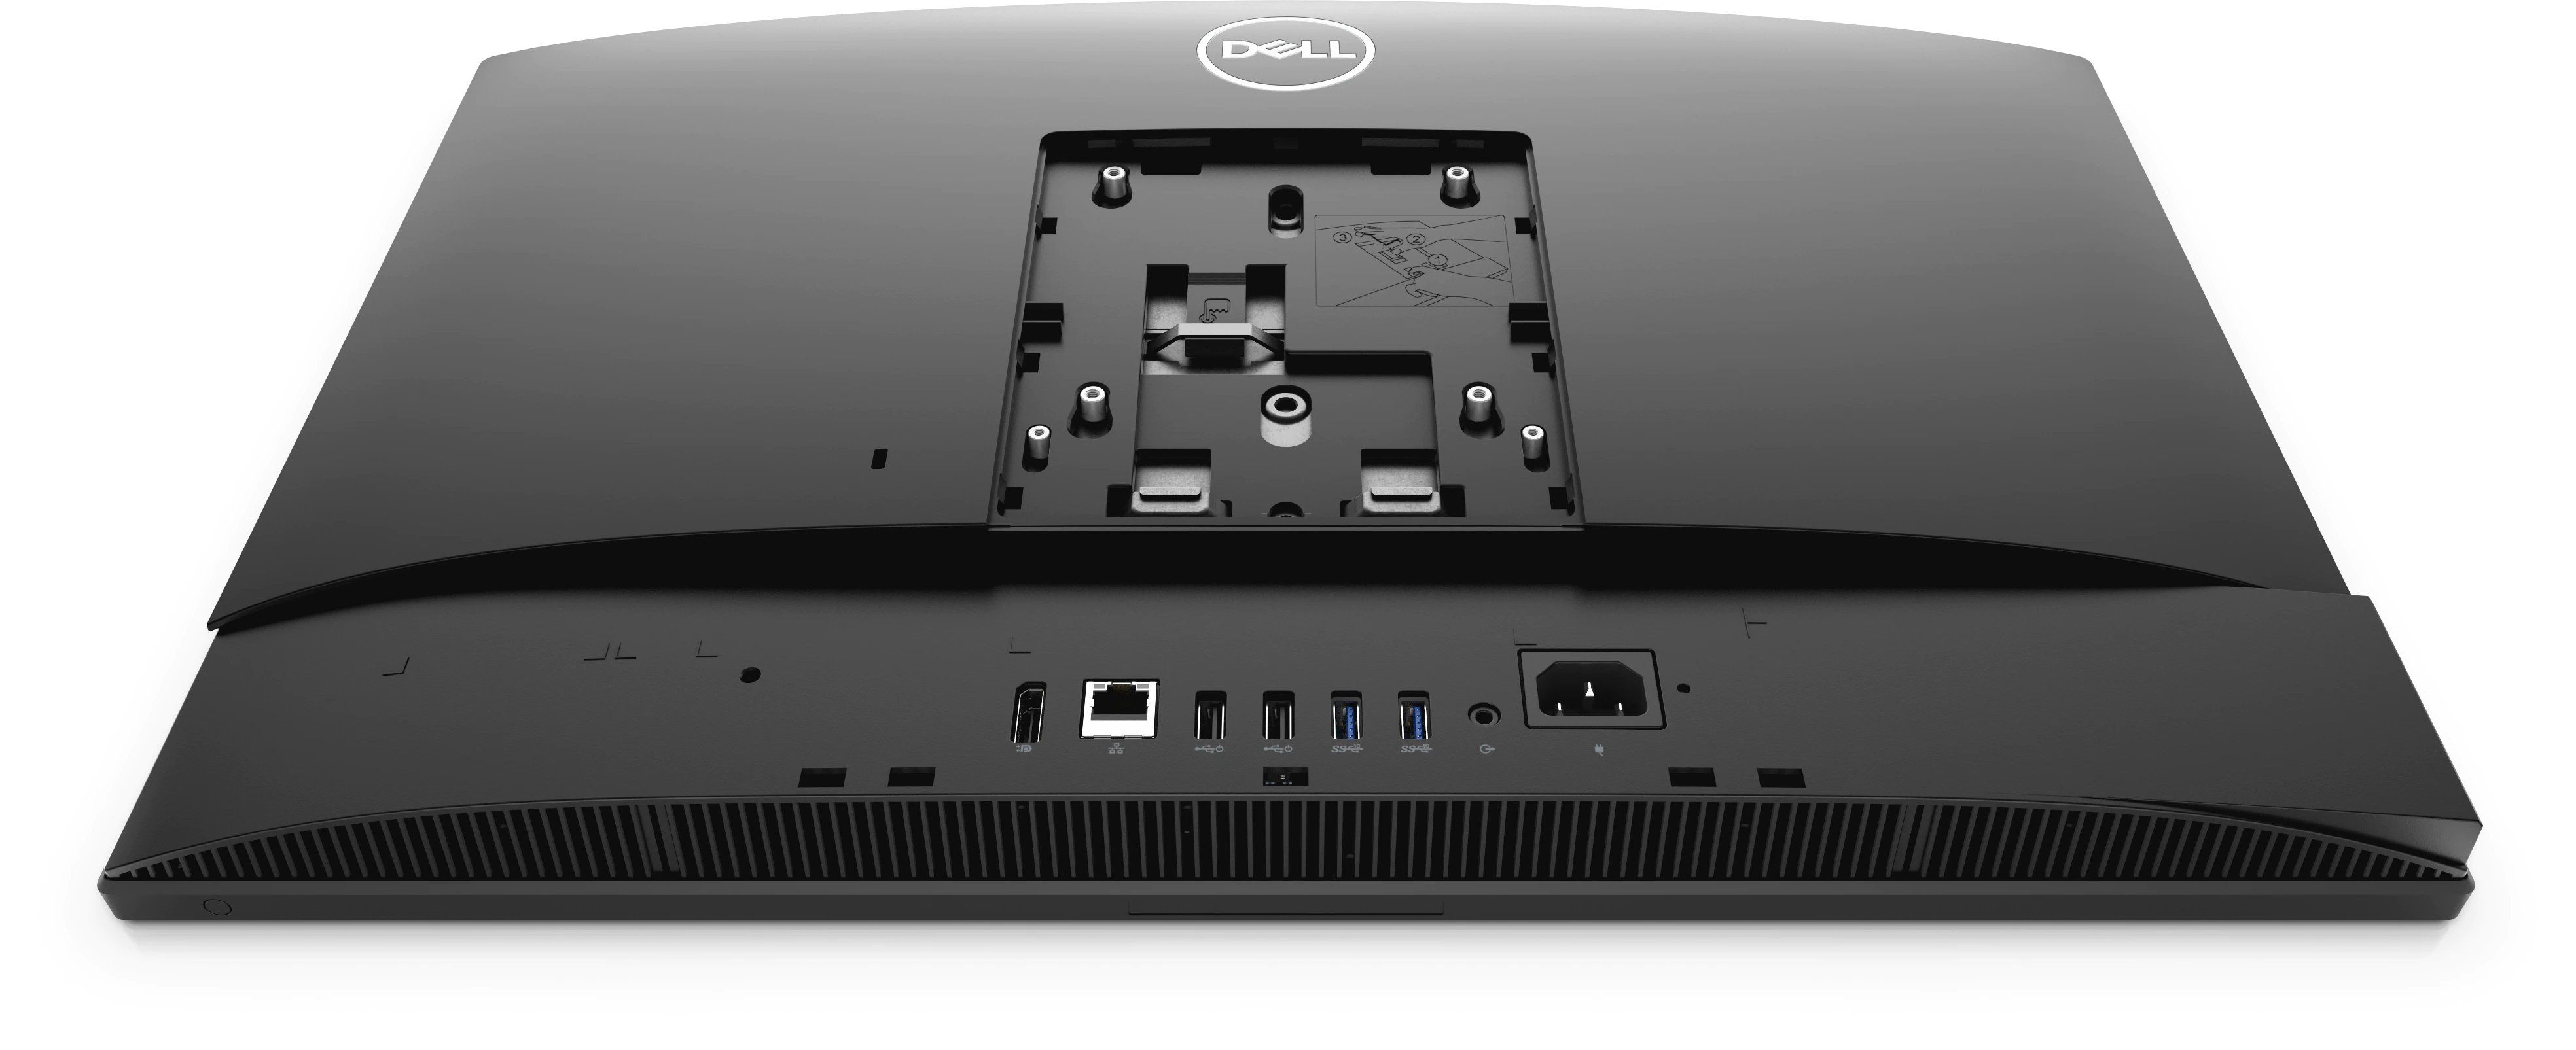 Desktop PC Dell OptiPlex 5490 All-in-One Intel Core i5-10500T, 6C / 12T, 2.3 GHz base, 3.8 GHz turbo, 12 MB cache, 35 W, 8 GB DDR4, 256 GB SSD, Intel UHD Graphics 630, Fara unitate optica, 155W, Microsoft Windows 10 Pro, Negru_6